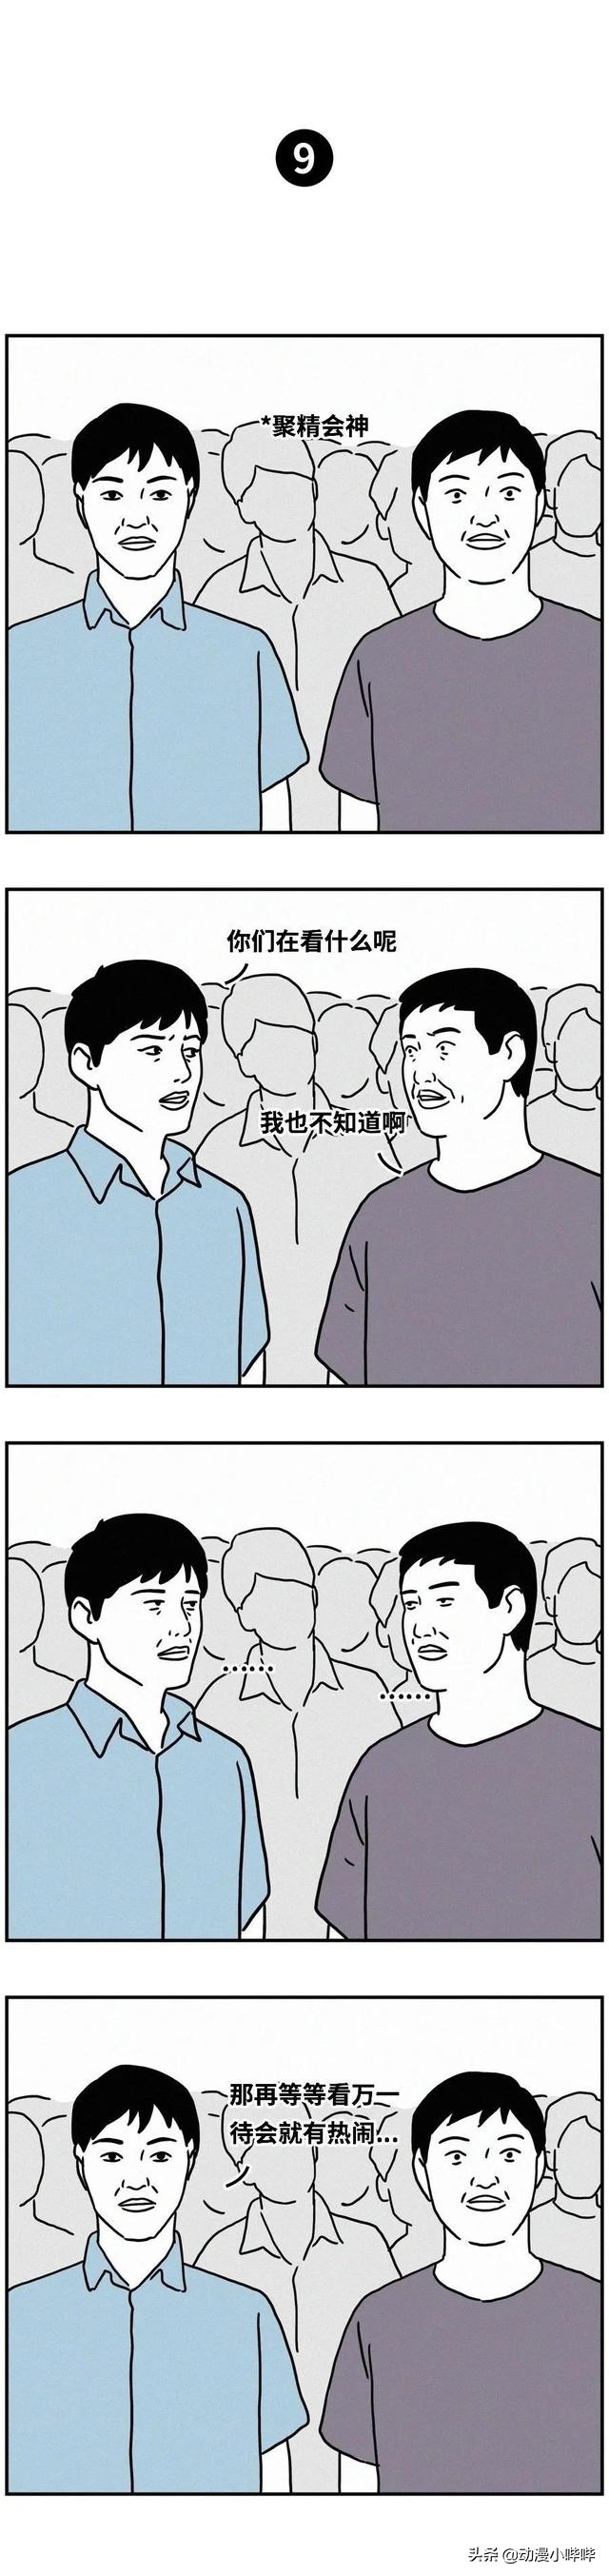 中國人有多愛看熱鬧？ 一組漫畫告訴你，場面過於真實